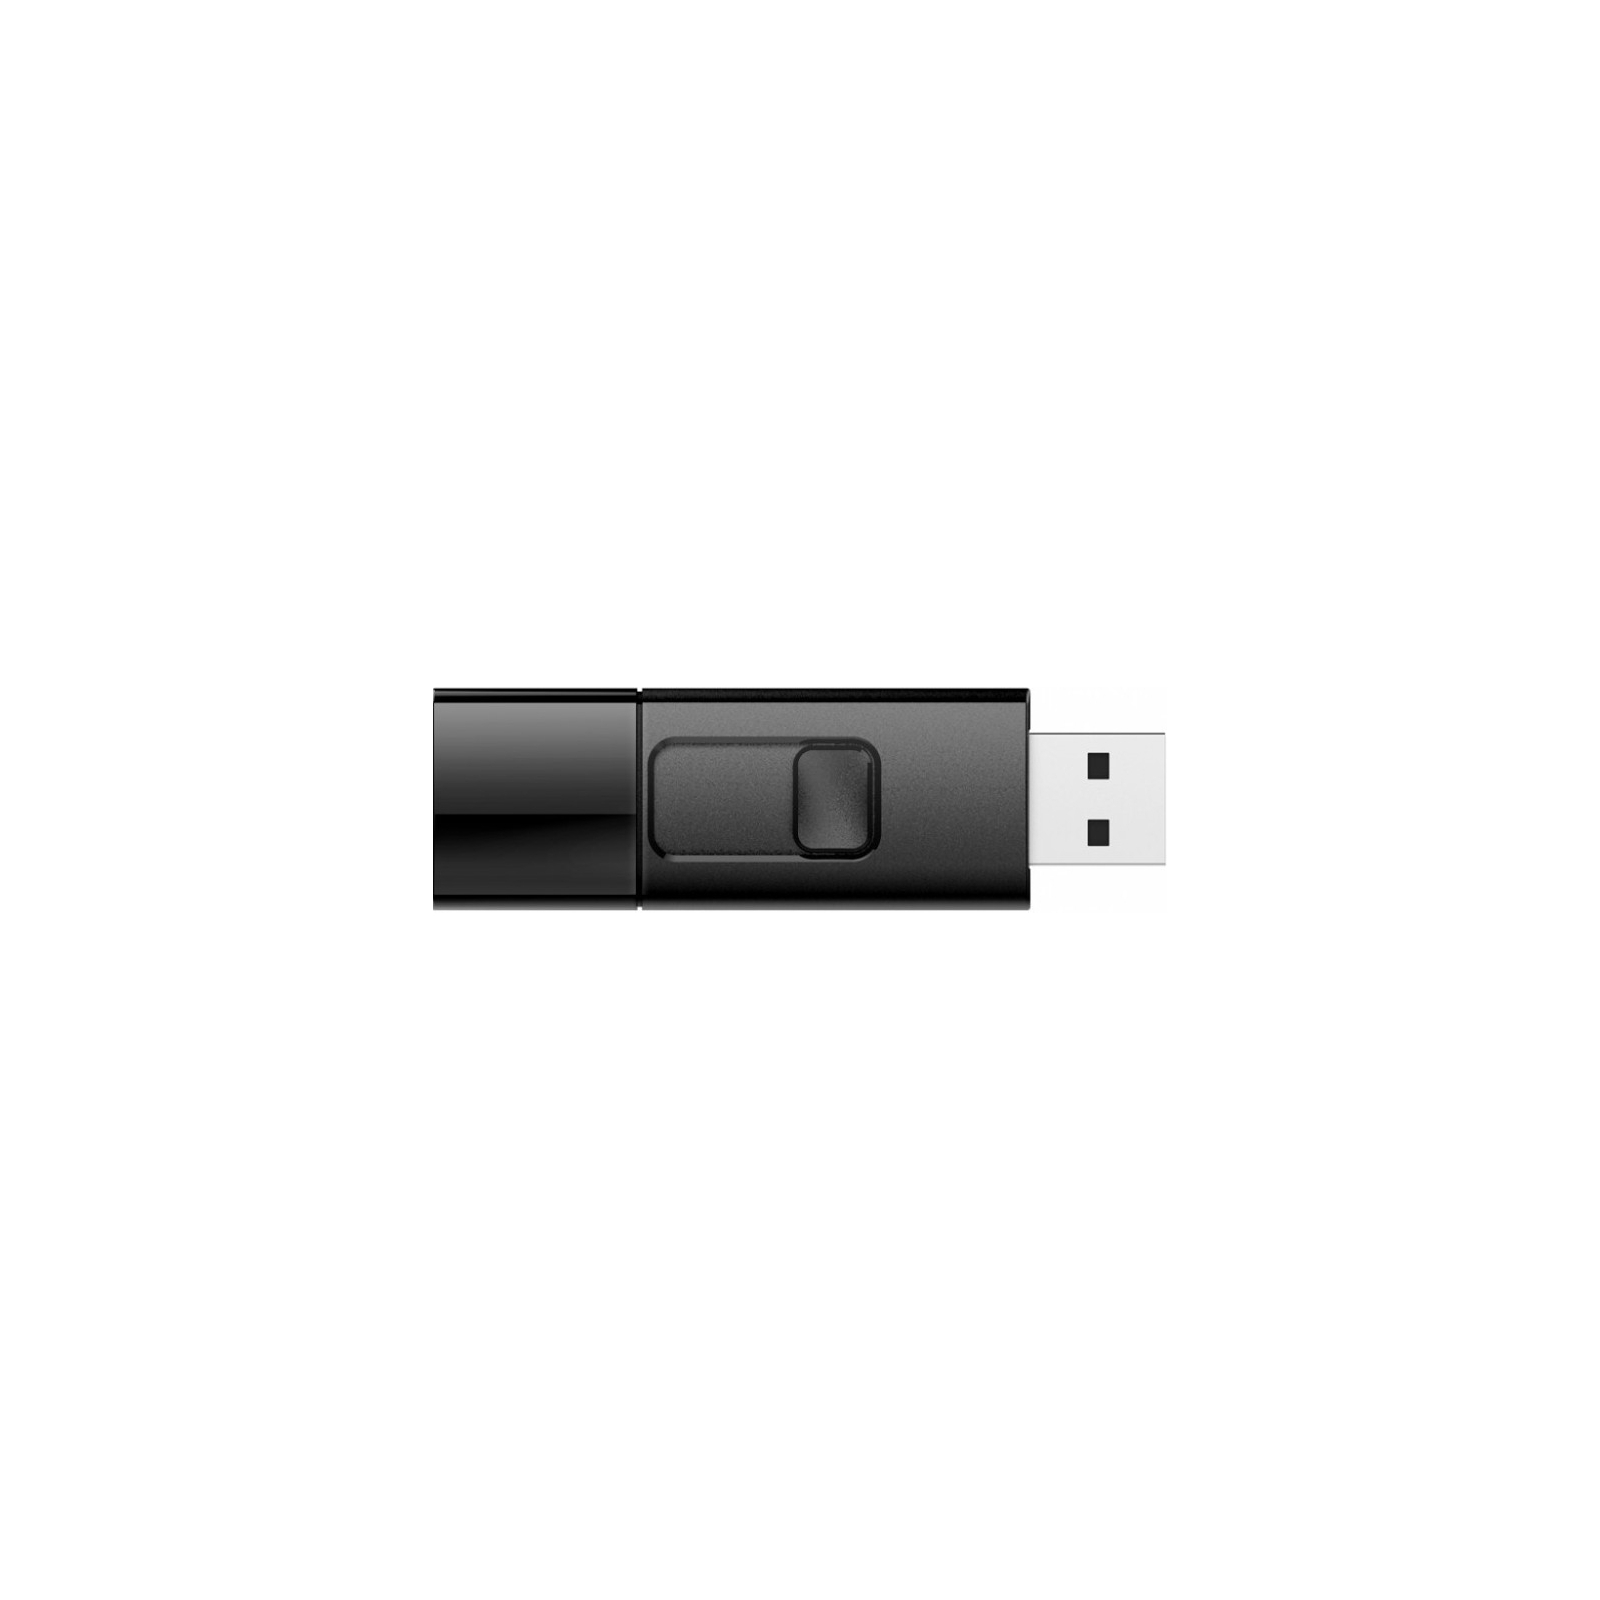 USB флеш накопичувач Silicon Power 64Gb BLAZE B05 Black USB3.0 (SP064GBUF3B05V1K) зображення 3